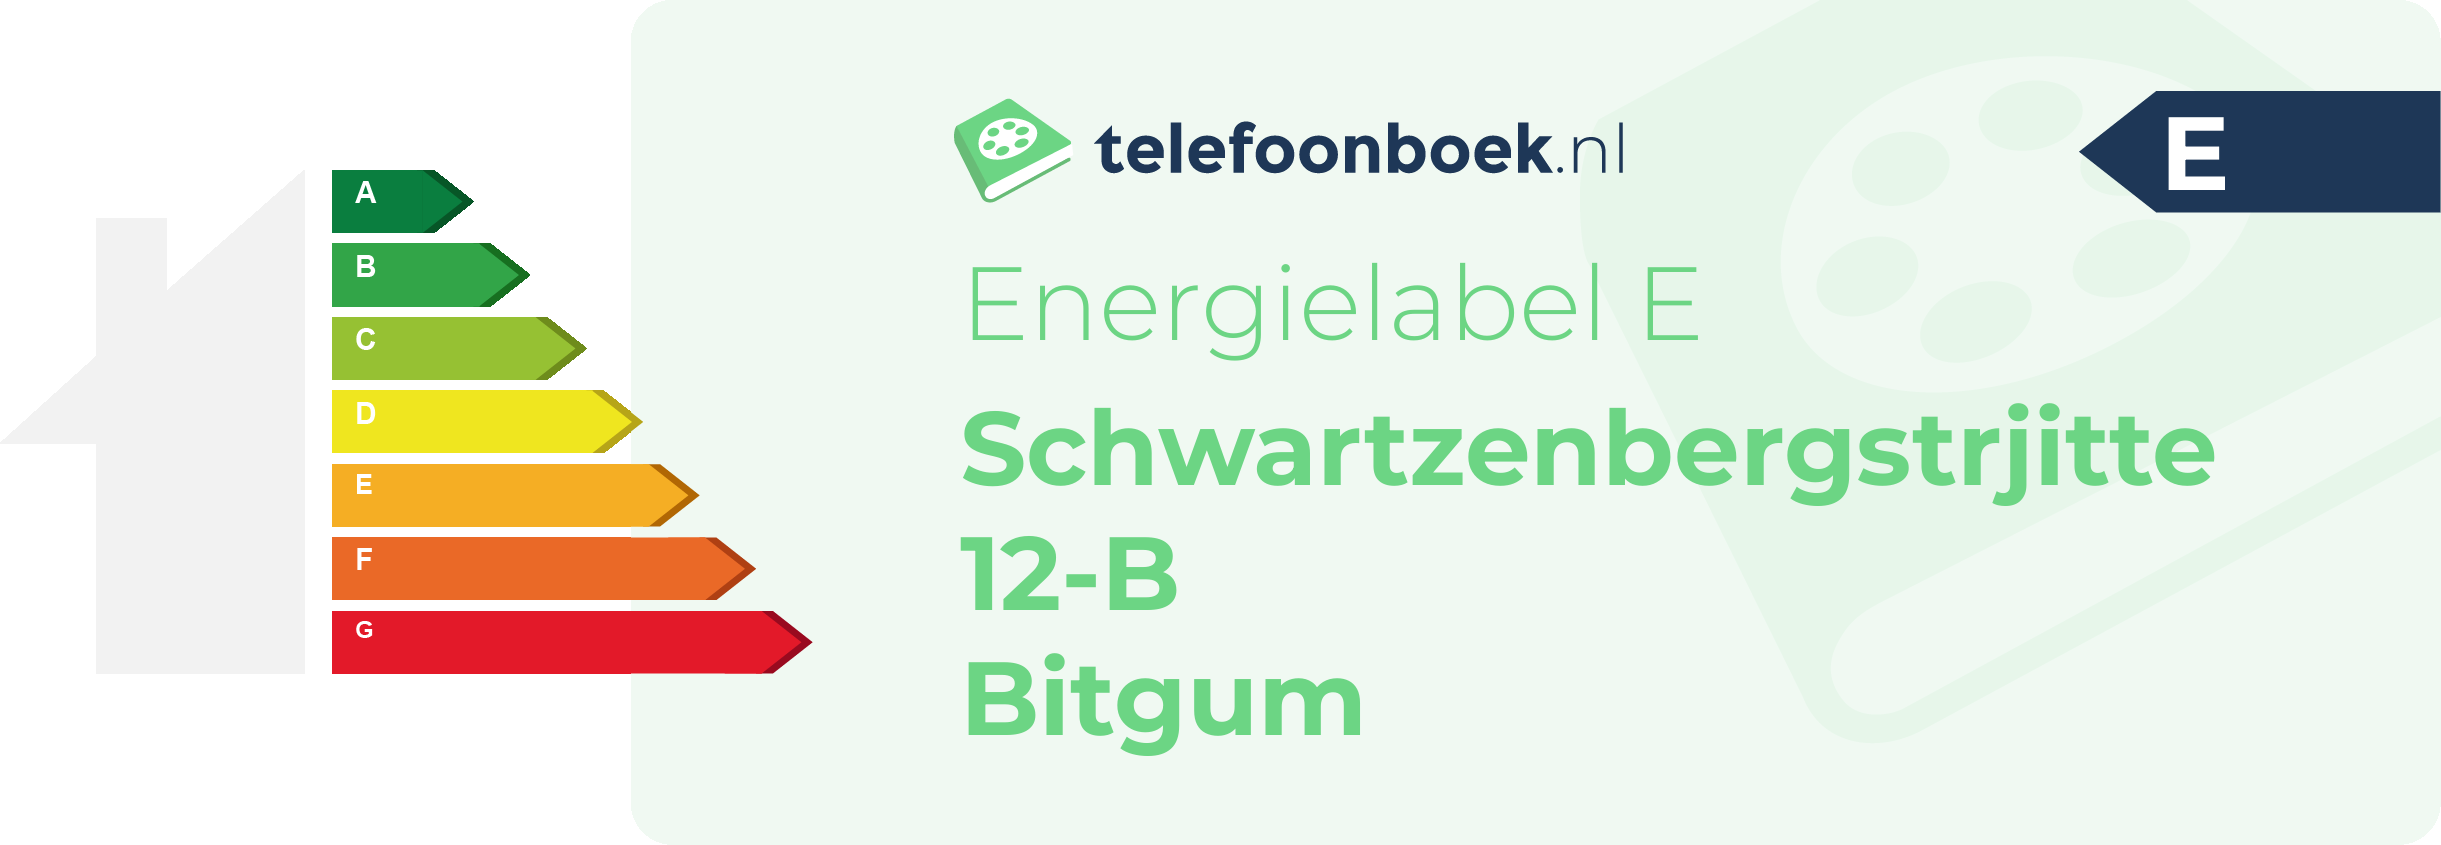 Energielabel Schwartzenbergstrjitte 12-B Bitgum